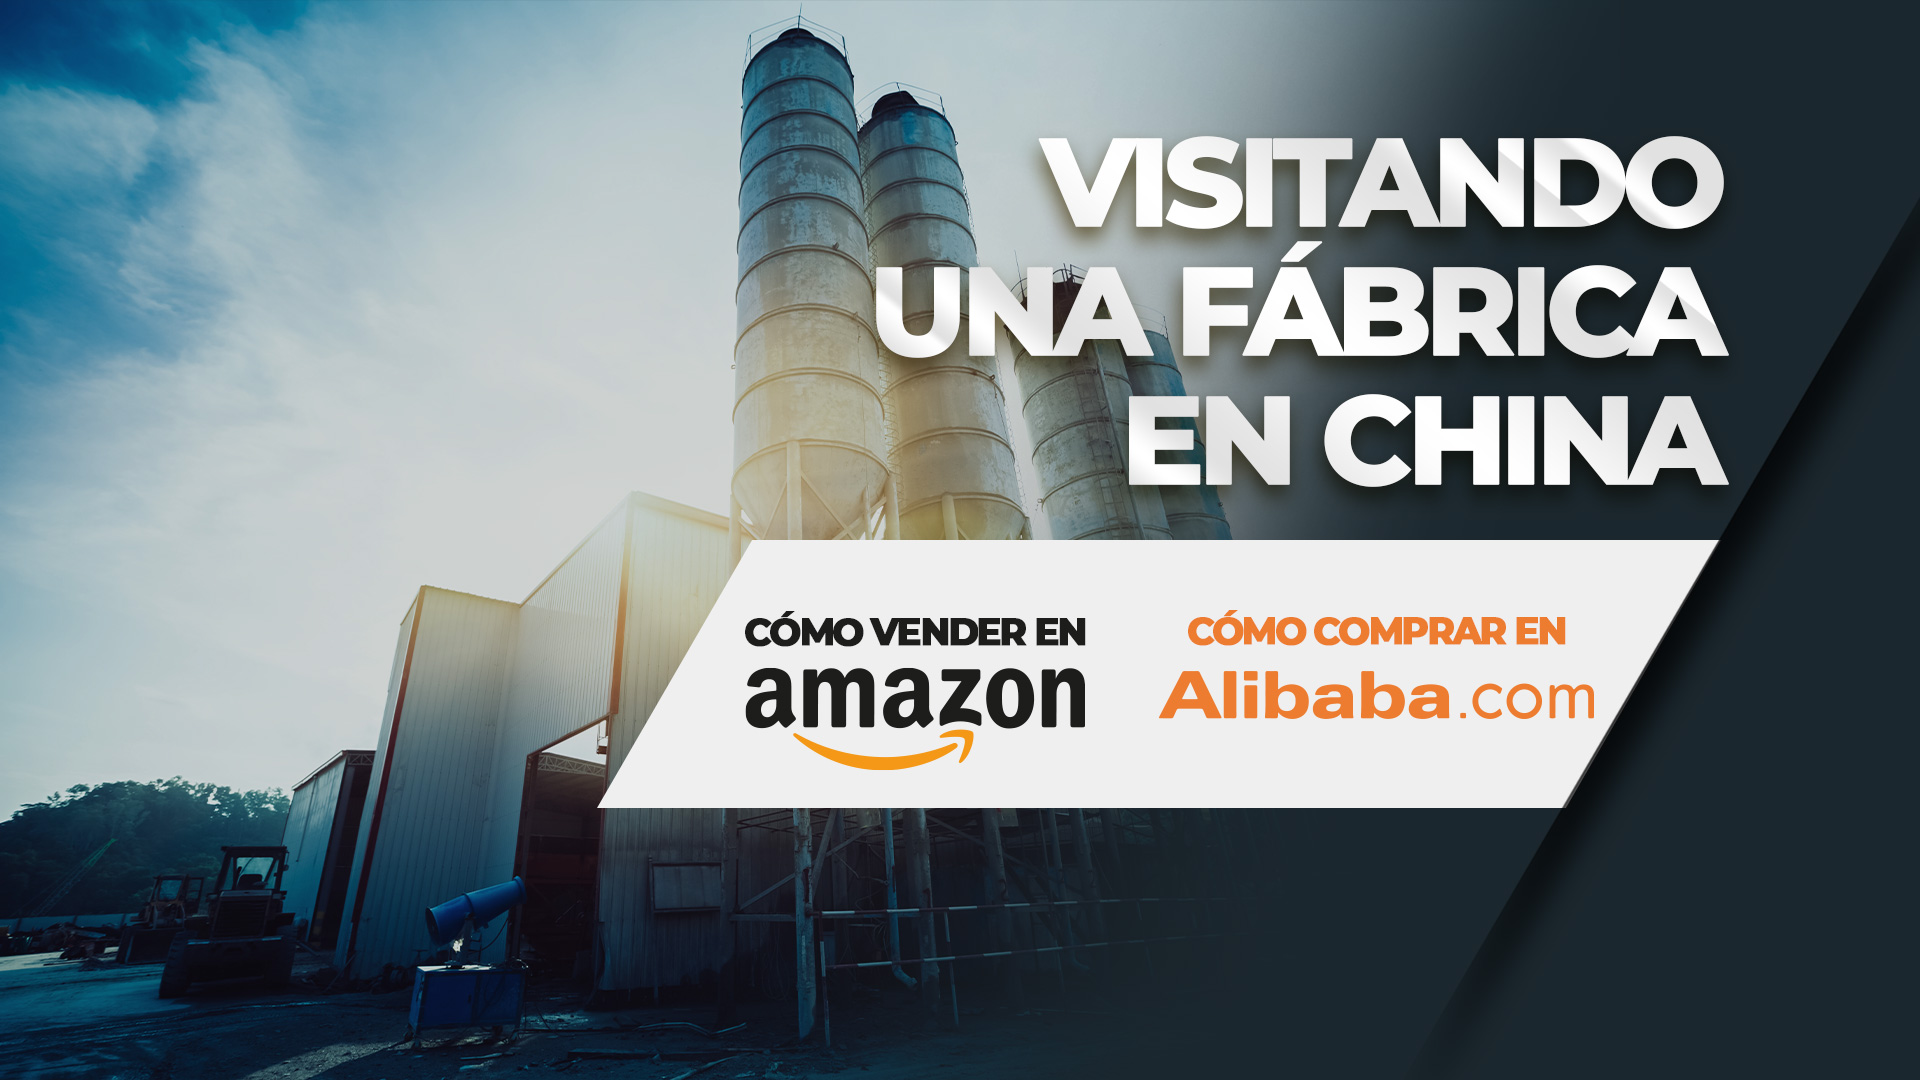 Visitando fábrica China | Como comprar en Alibaba Visitando una fábrica en China Como vender en Amazon | Como comprar Alibaba - Imperio Ecom